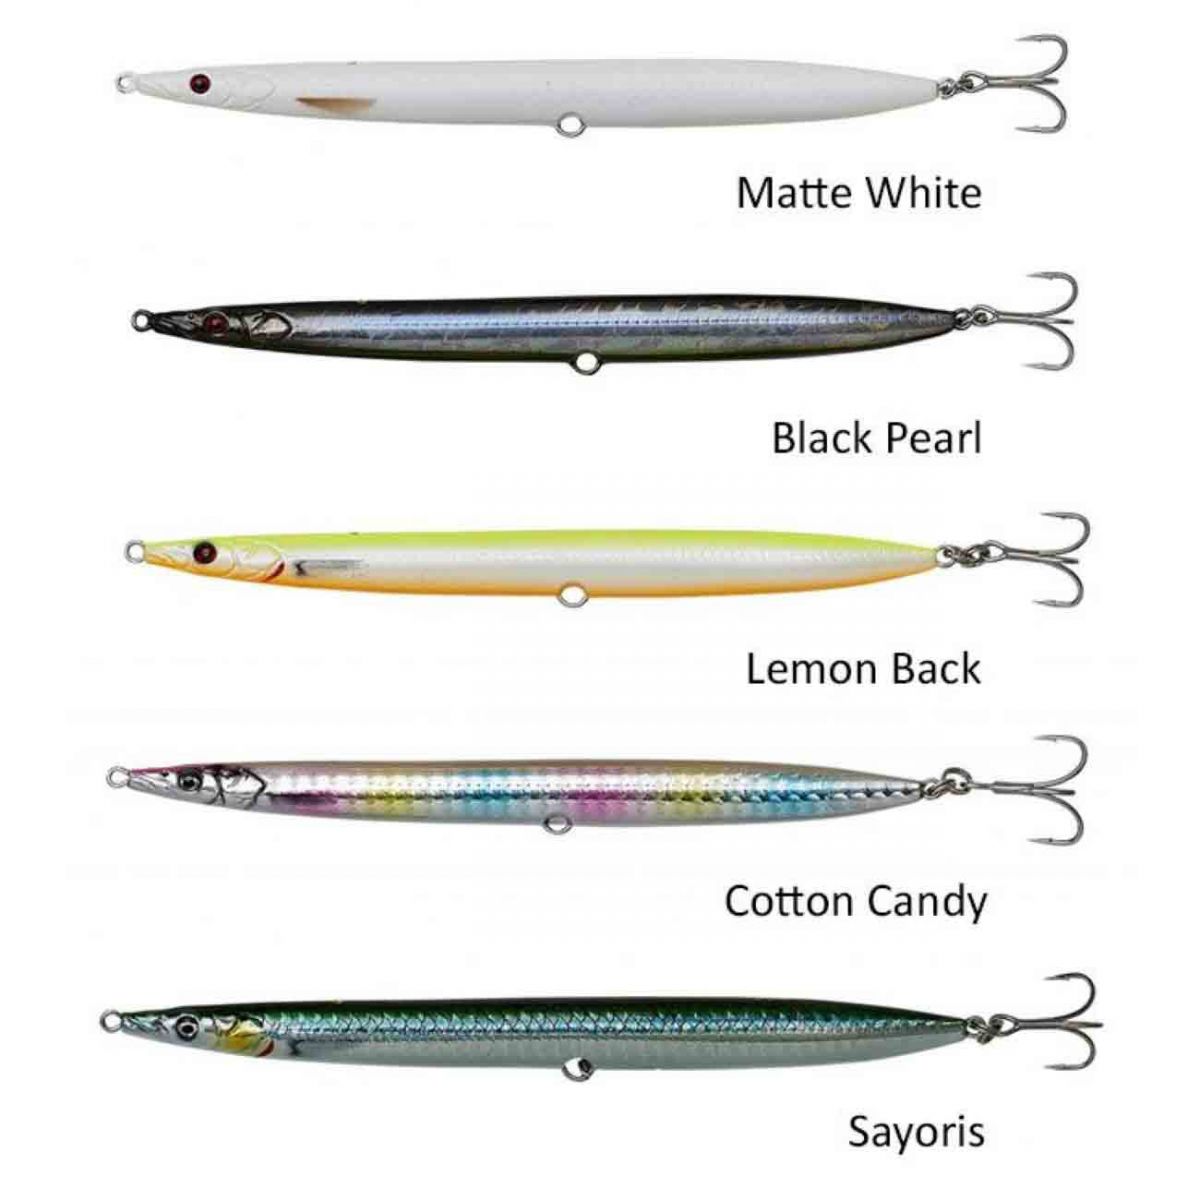 Sandeel kalemi, mükemmel tuzlu su levrek iğneleri ve pratik tiz iğne koruyucusu ile birlikte verilir. Levrek balıkçılığı için tasarlanmış ürün yelpazesinde 5 renk.